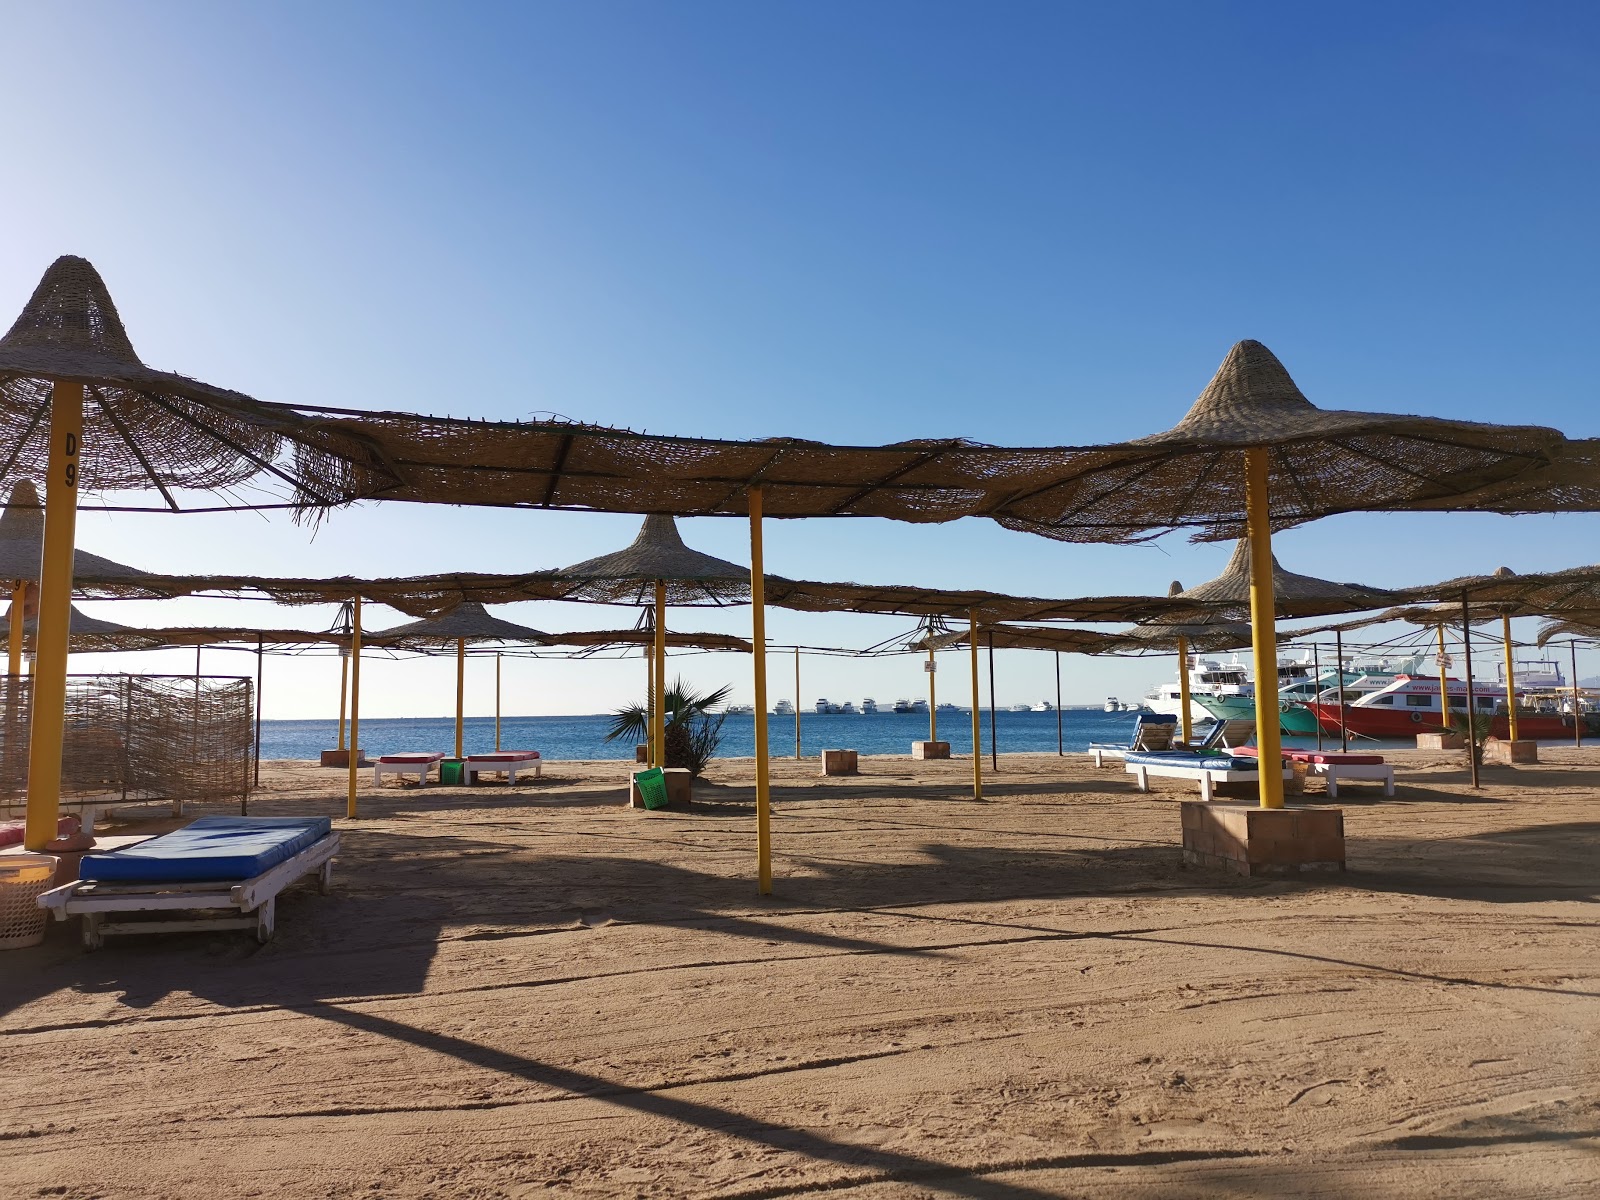 Foto de White Beach Resort - lugar popular entre os apreciadores de relaxamento